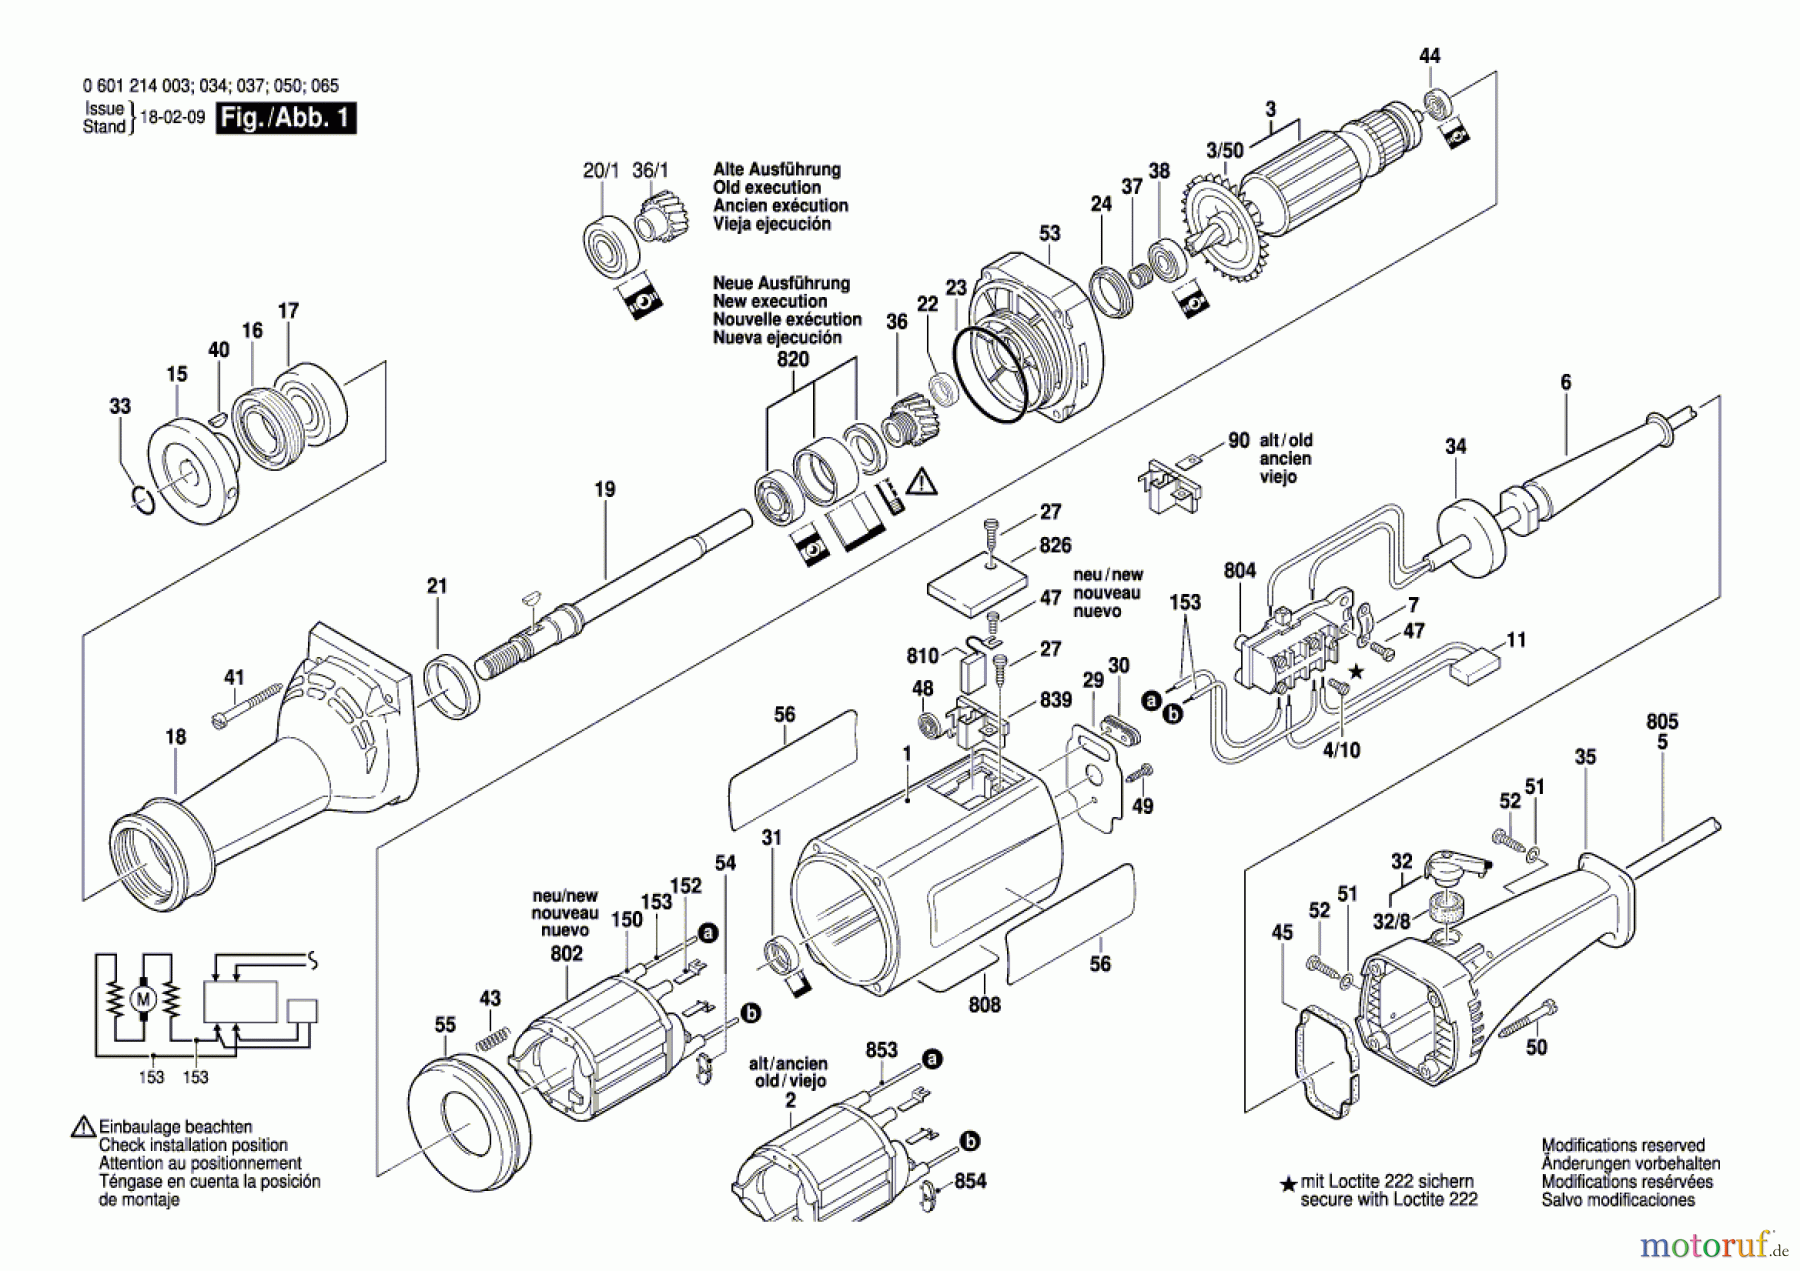  Bosch Werkzeug Geradschleifer GGS 6 Seite 1